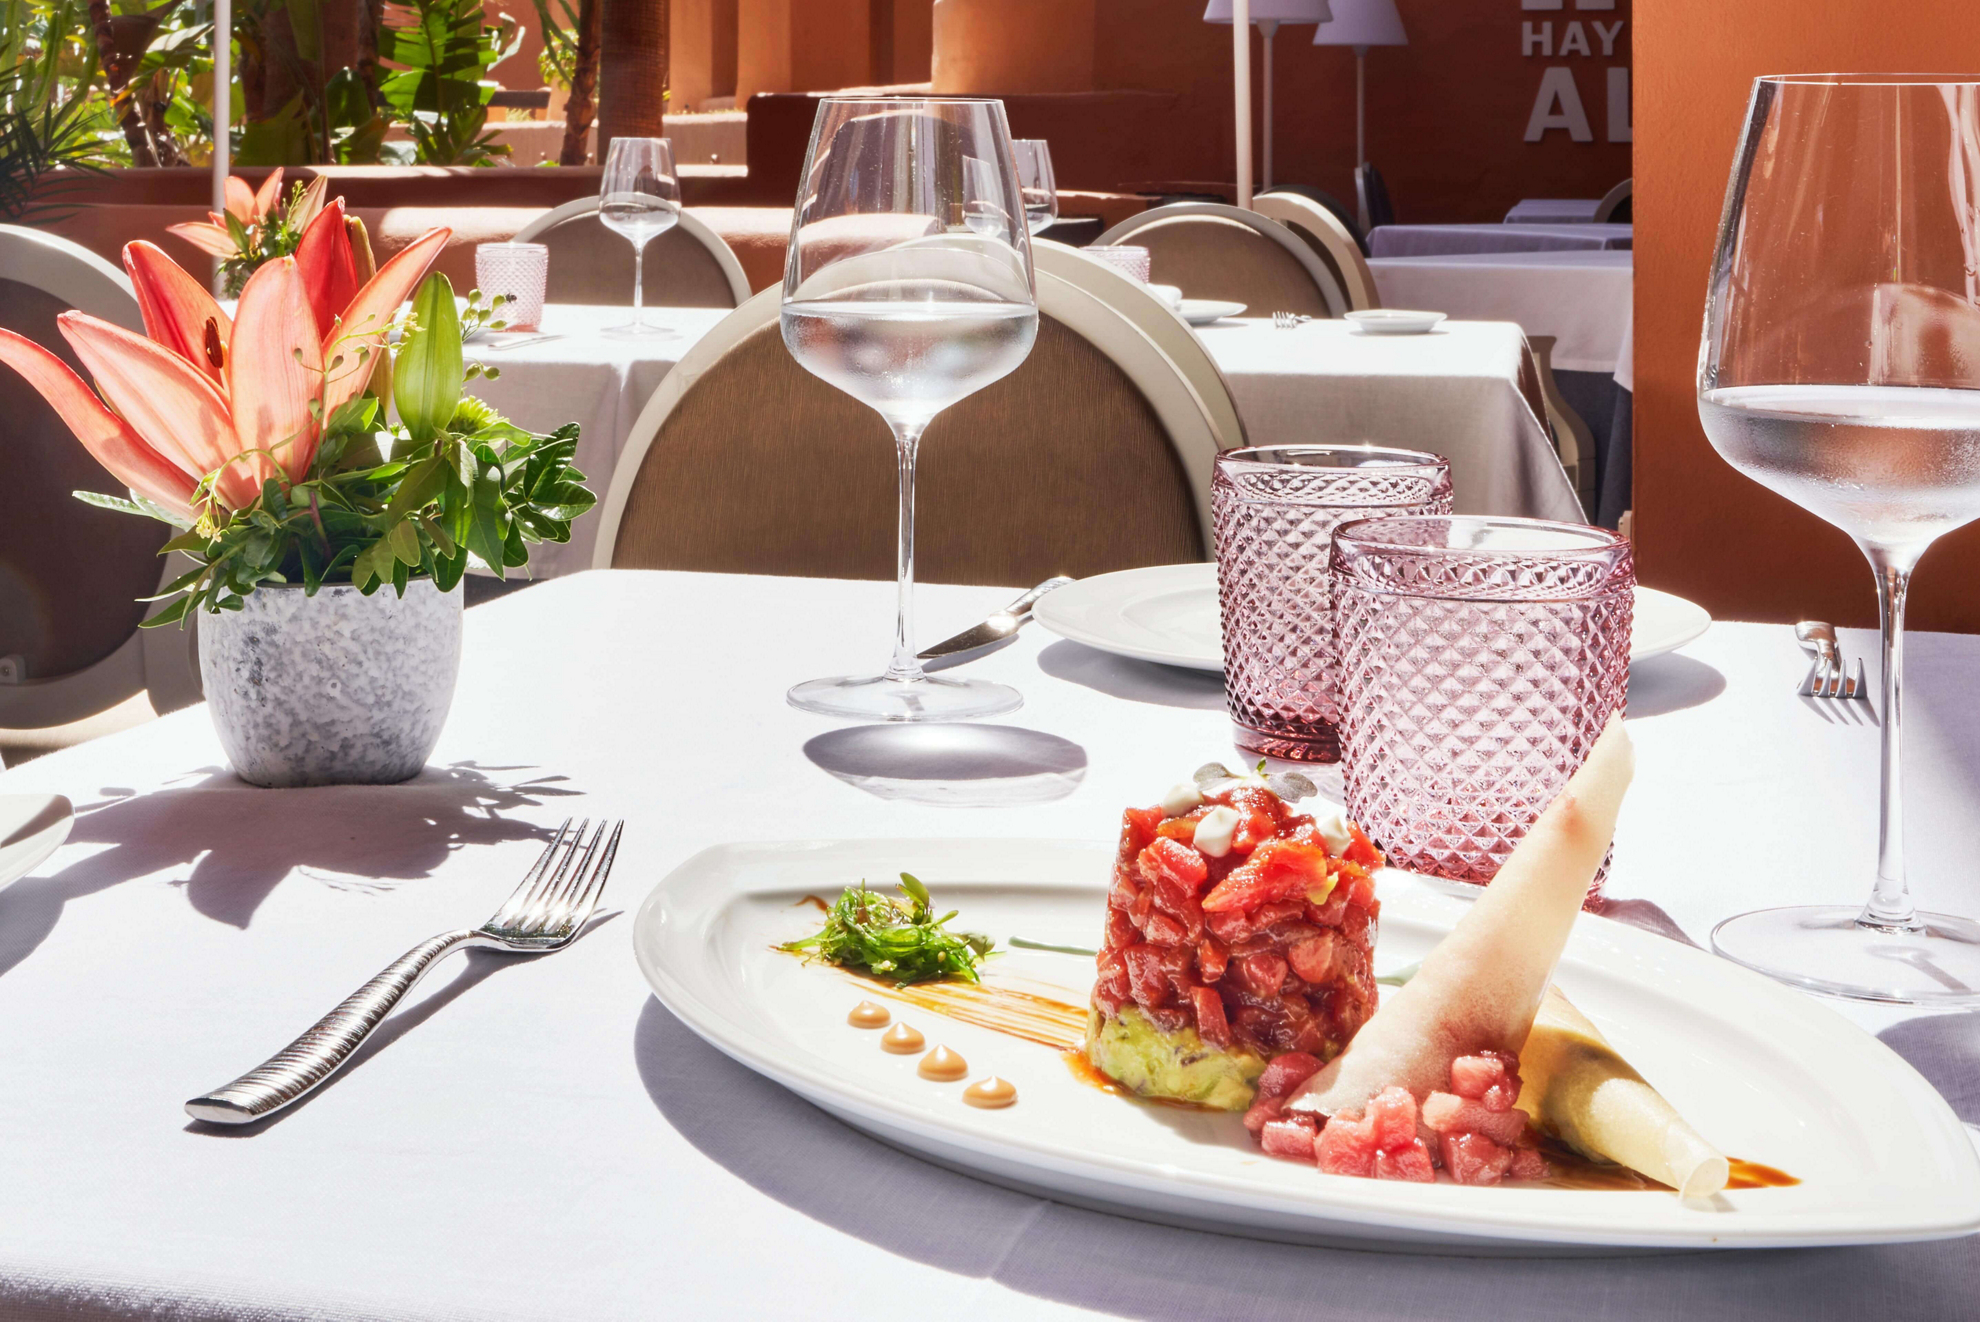 Almadraba-Thunfisch auf einem Teller mit Restaurant im Hintergrund.